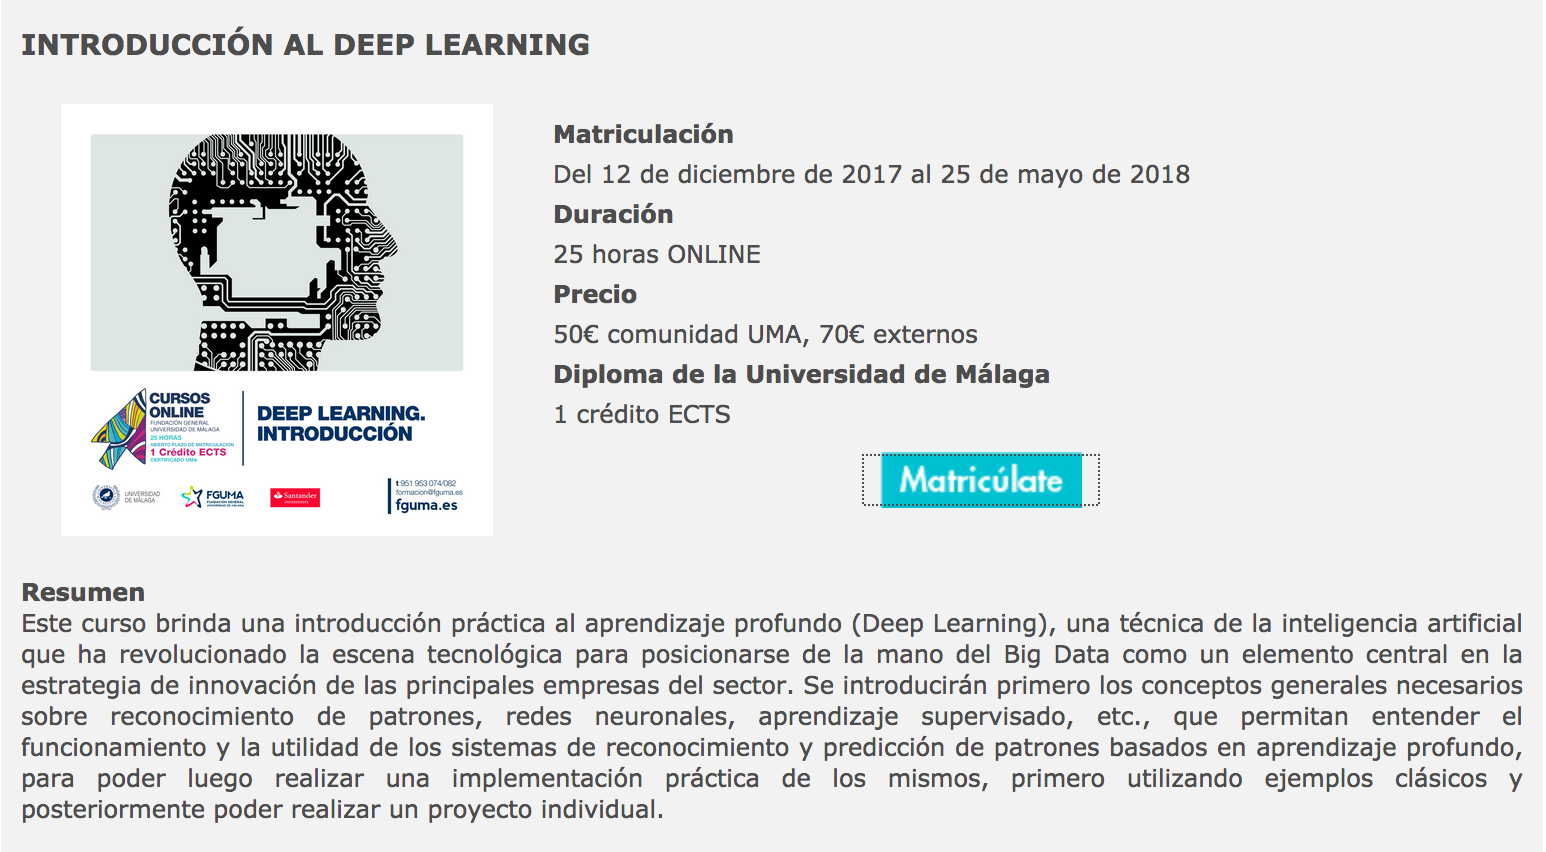 fguma DL deep klearning aprendizaje profundo
                  curso estudiantes